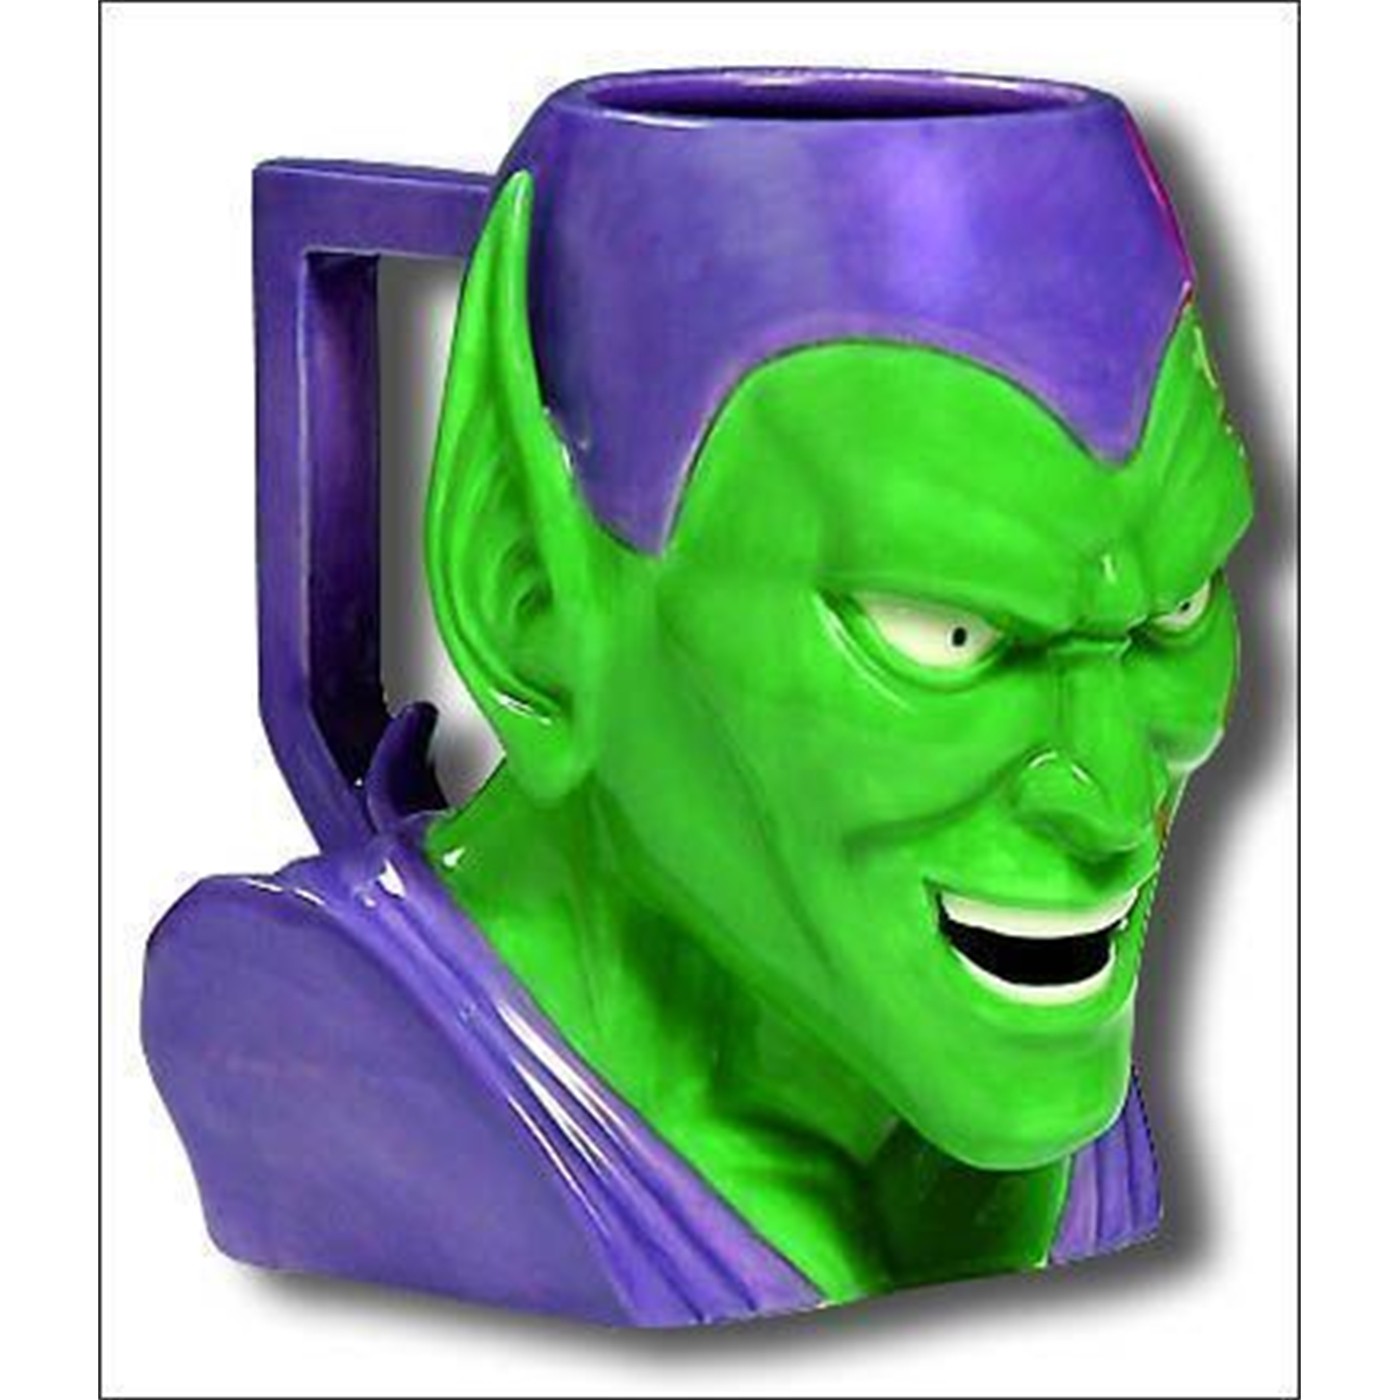 Green goblin Figural Mug